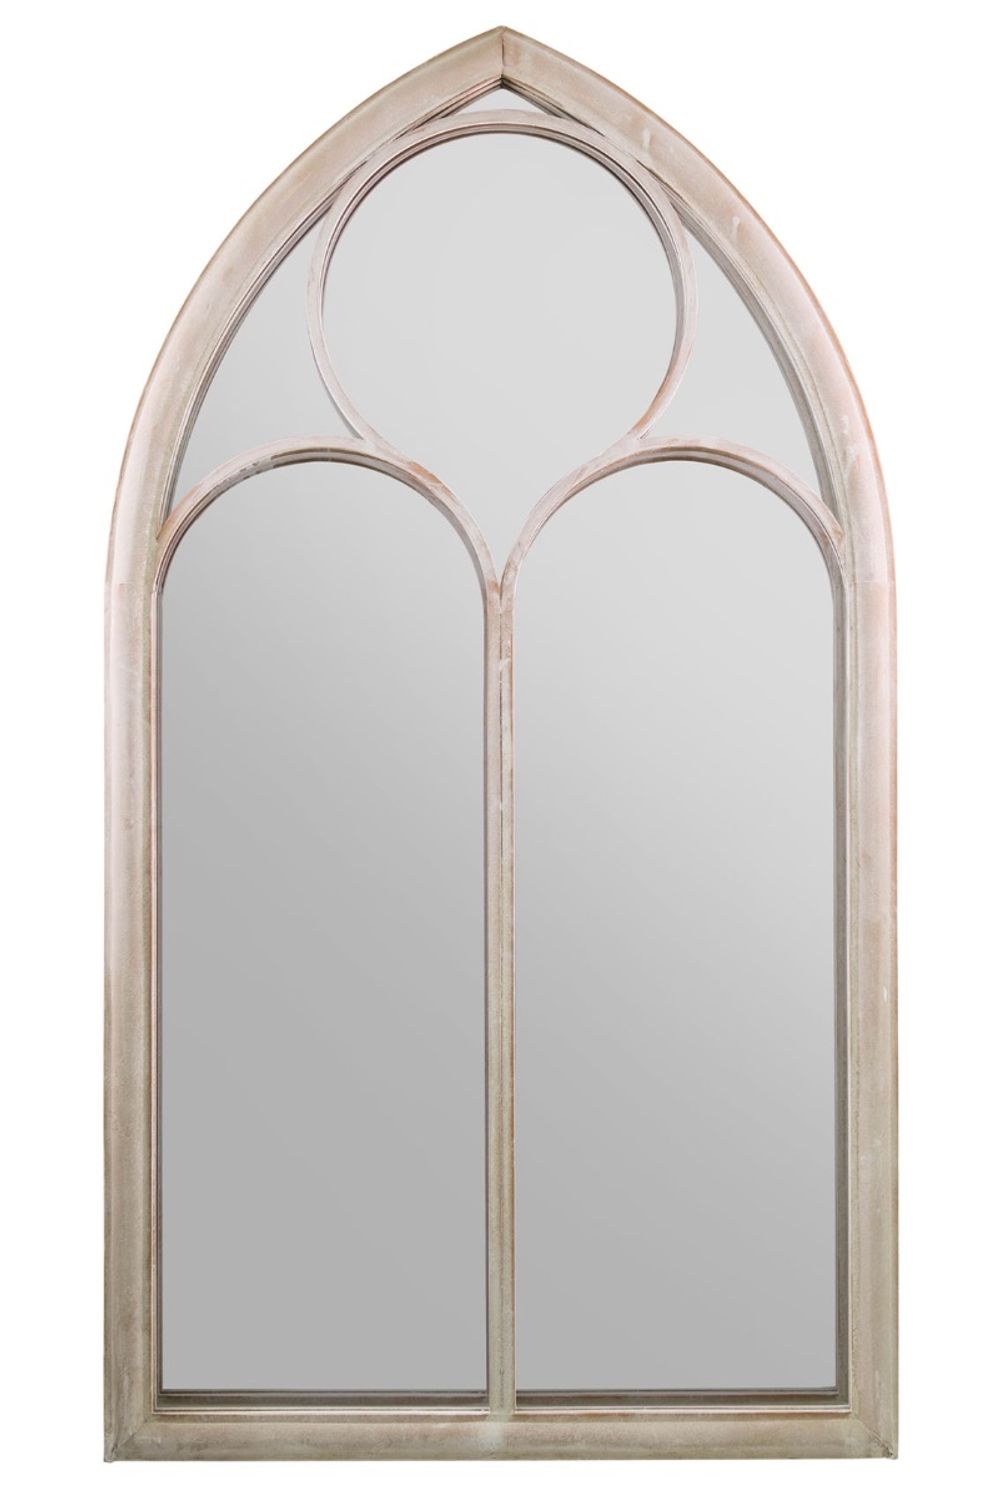 Somerley Chapel Arch Garden Mirror